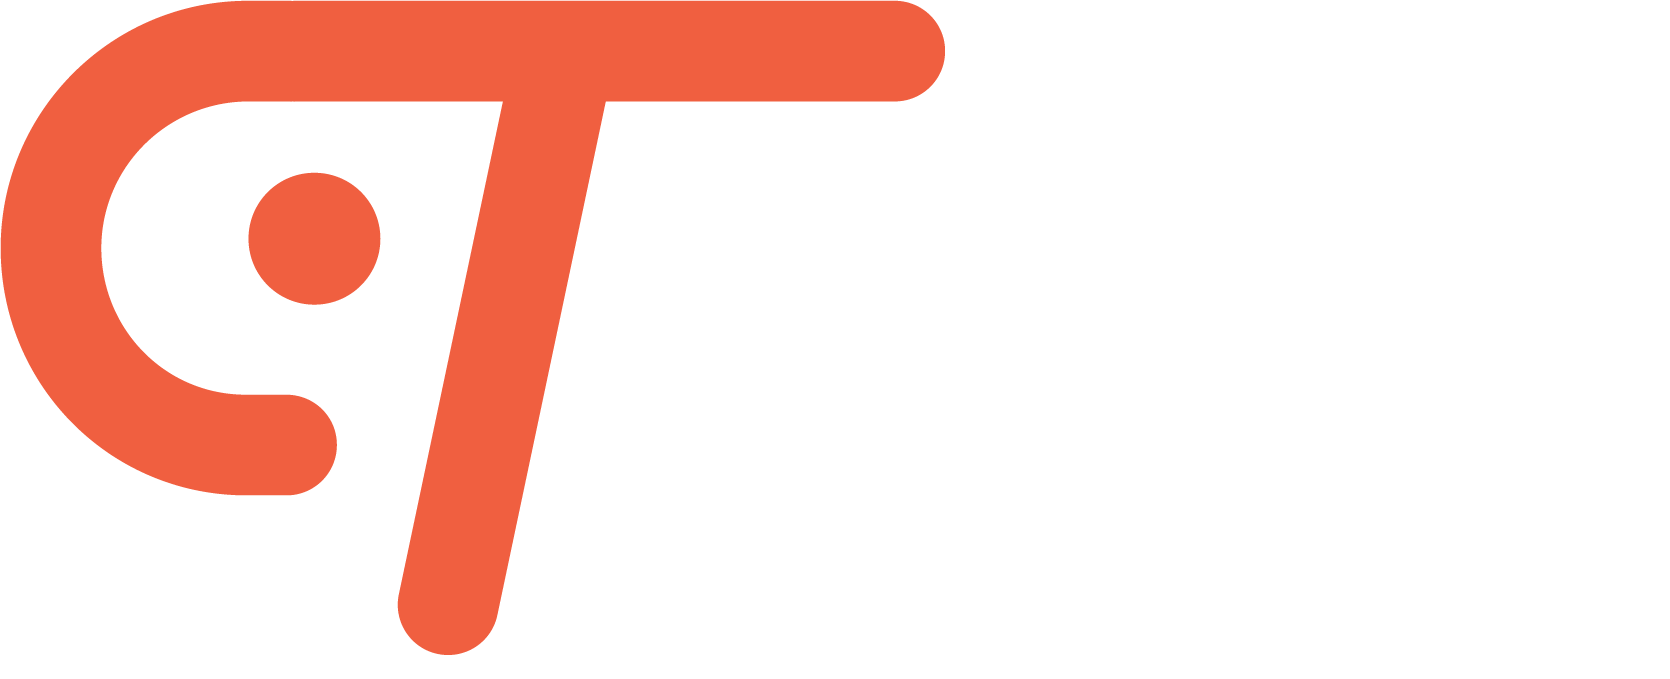 CTO as a Service